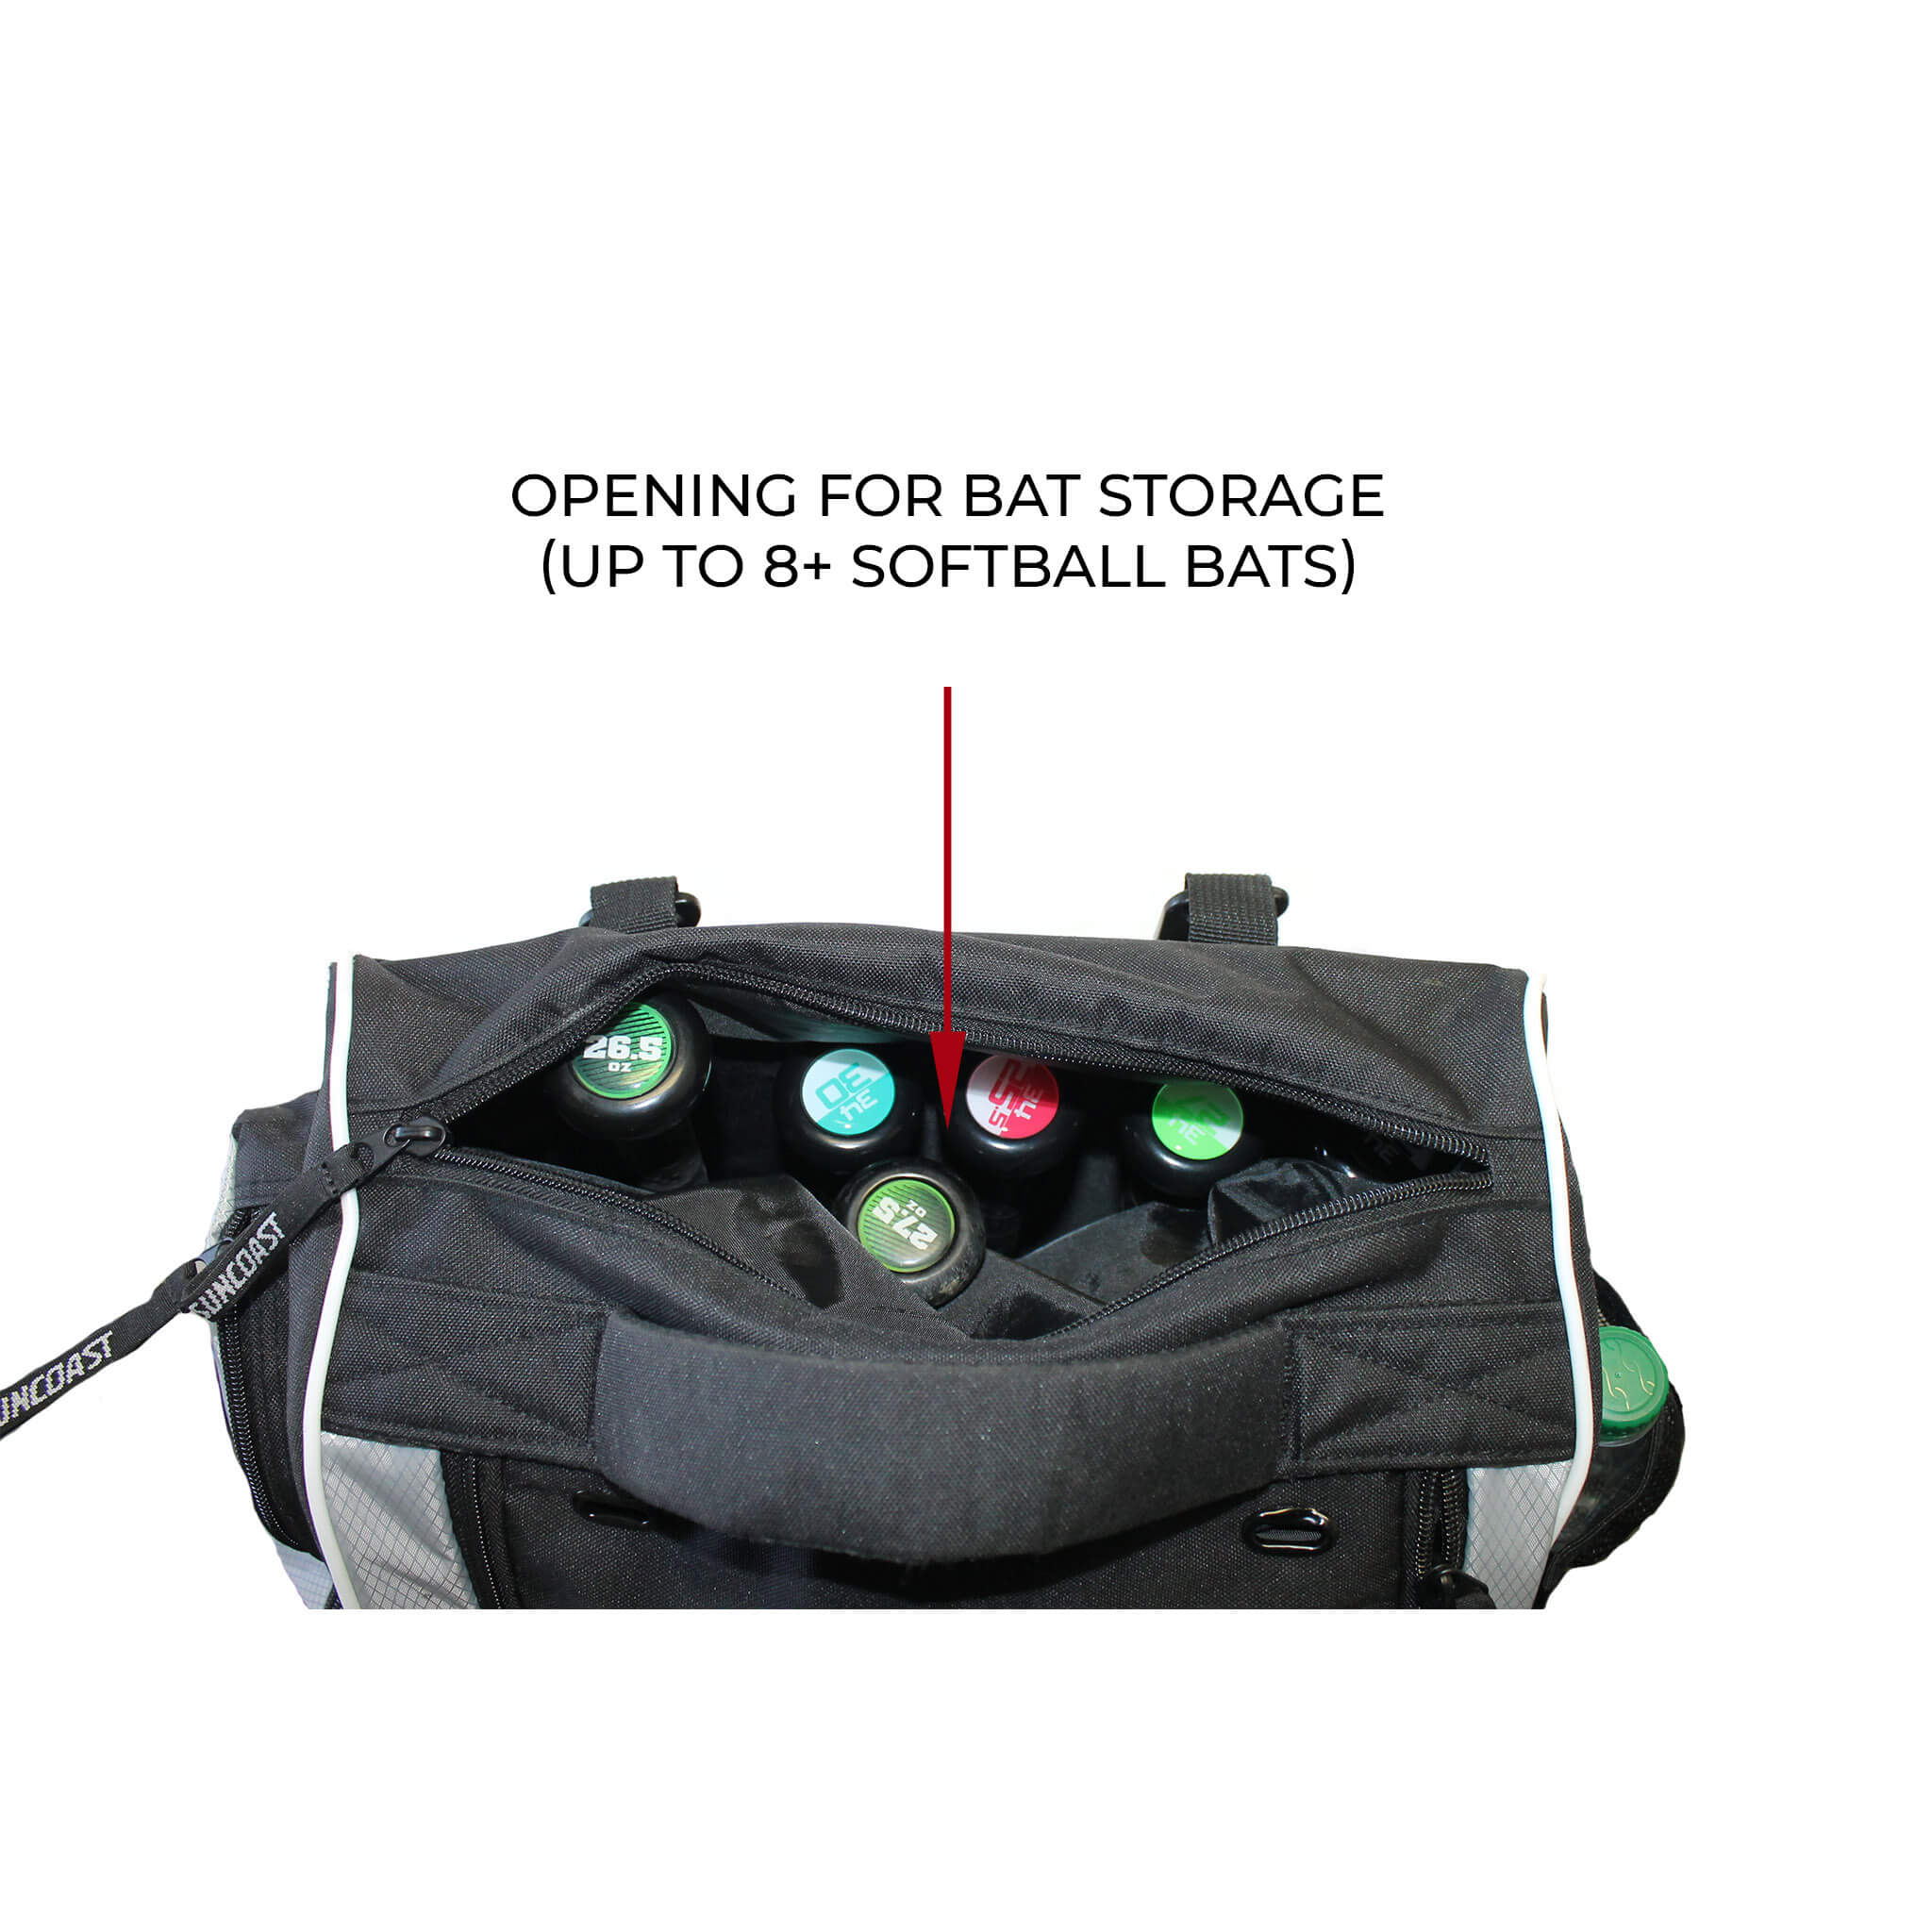 BaseballSoftball Bat Bags  Backpacks  BaseballMonkey